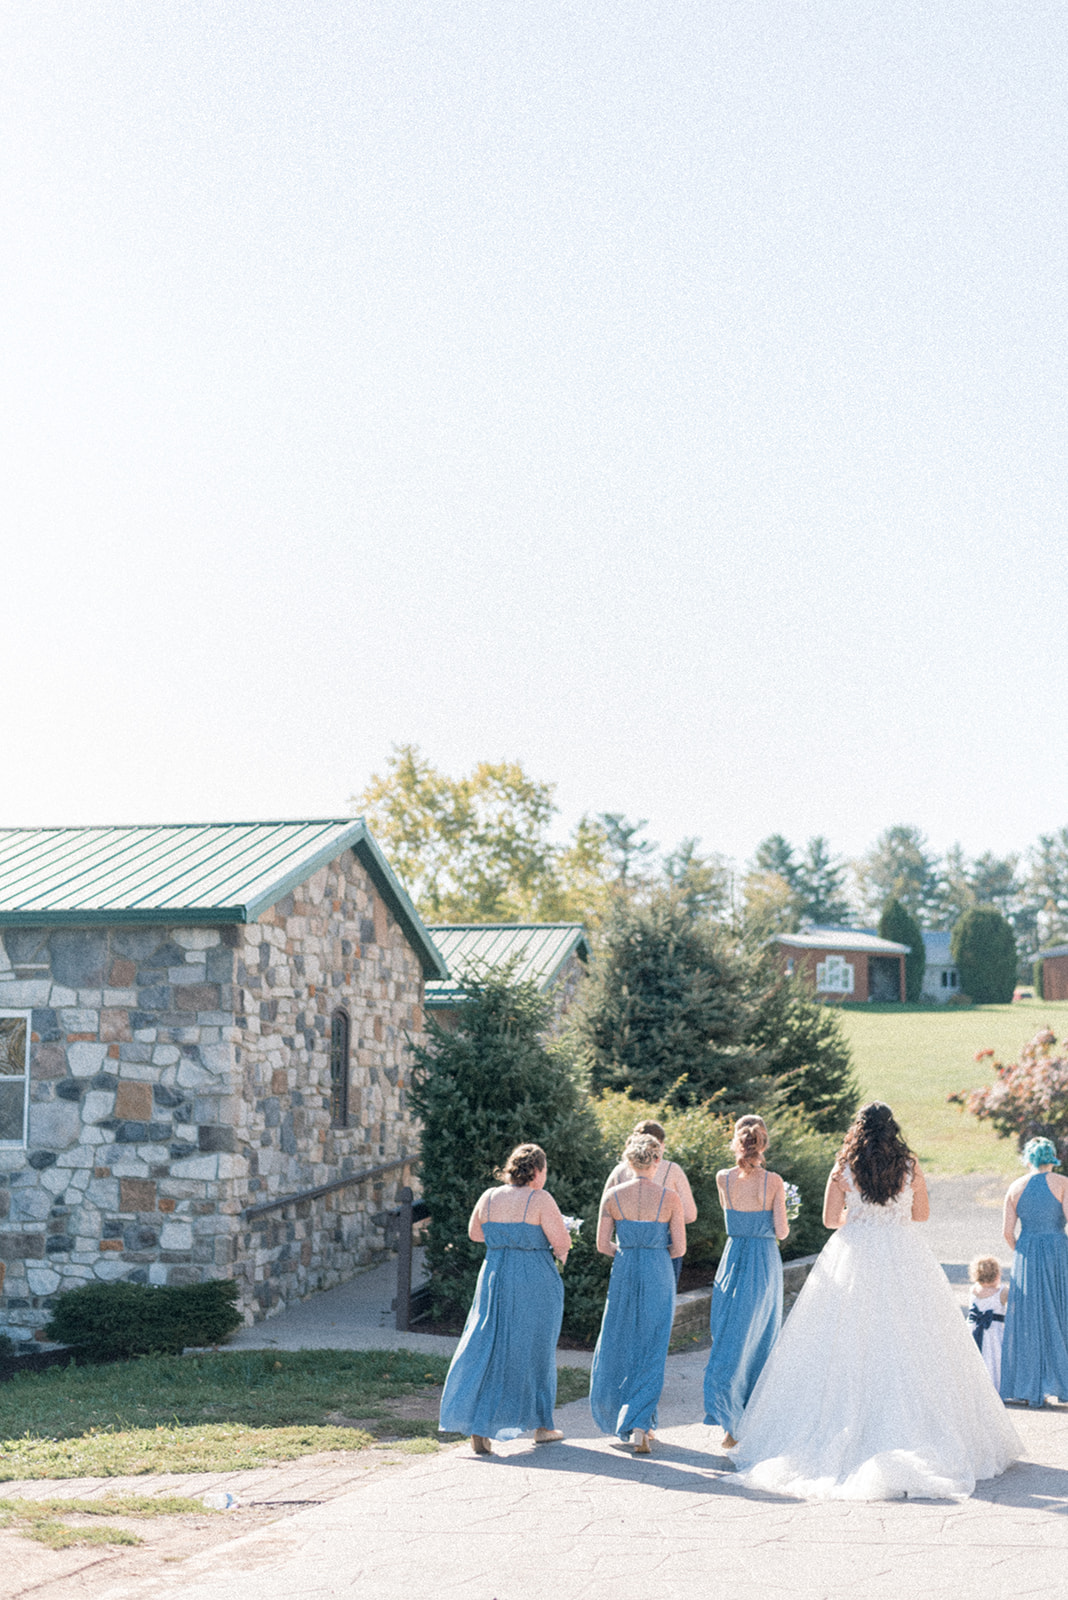 Pennsylvania wedding photographer captures bride and bridesmaids walking away